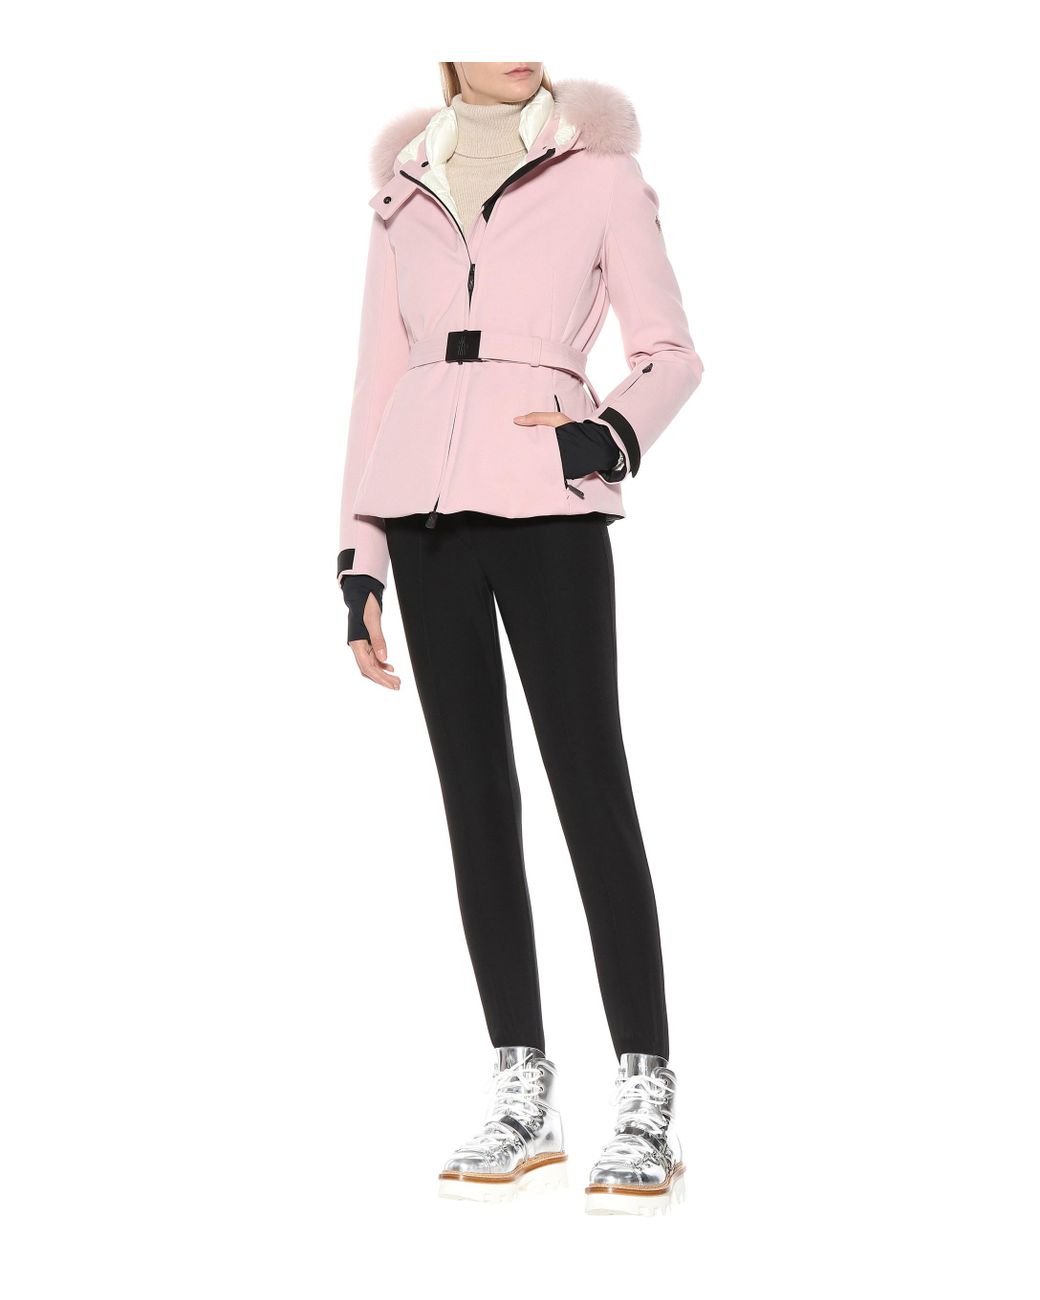 3 MONCLER GRENOBLE Bauges Fur-trimmed Down Ski Jacket in Pink | Lyst